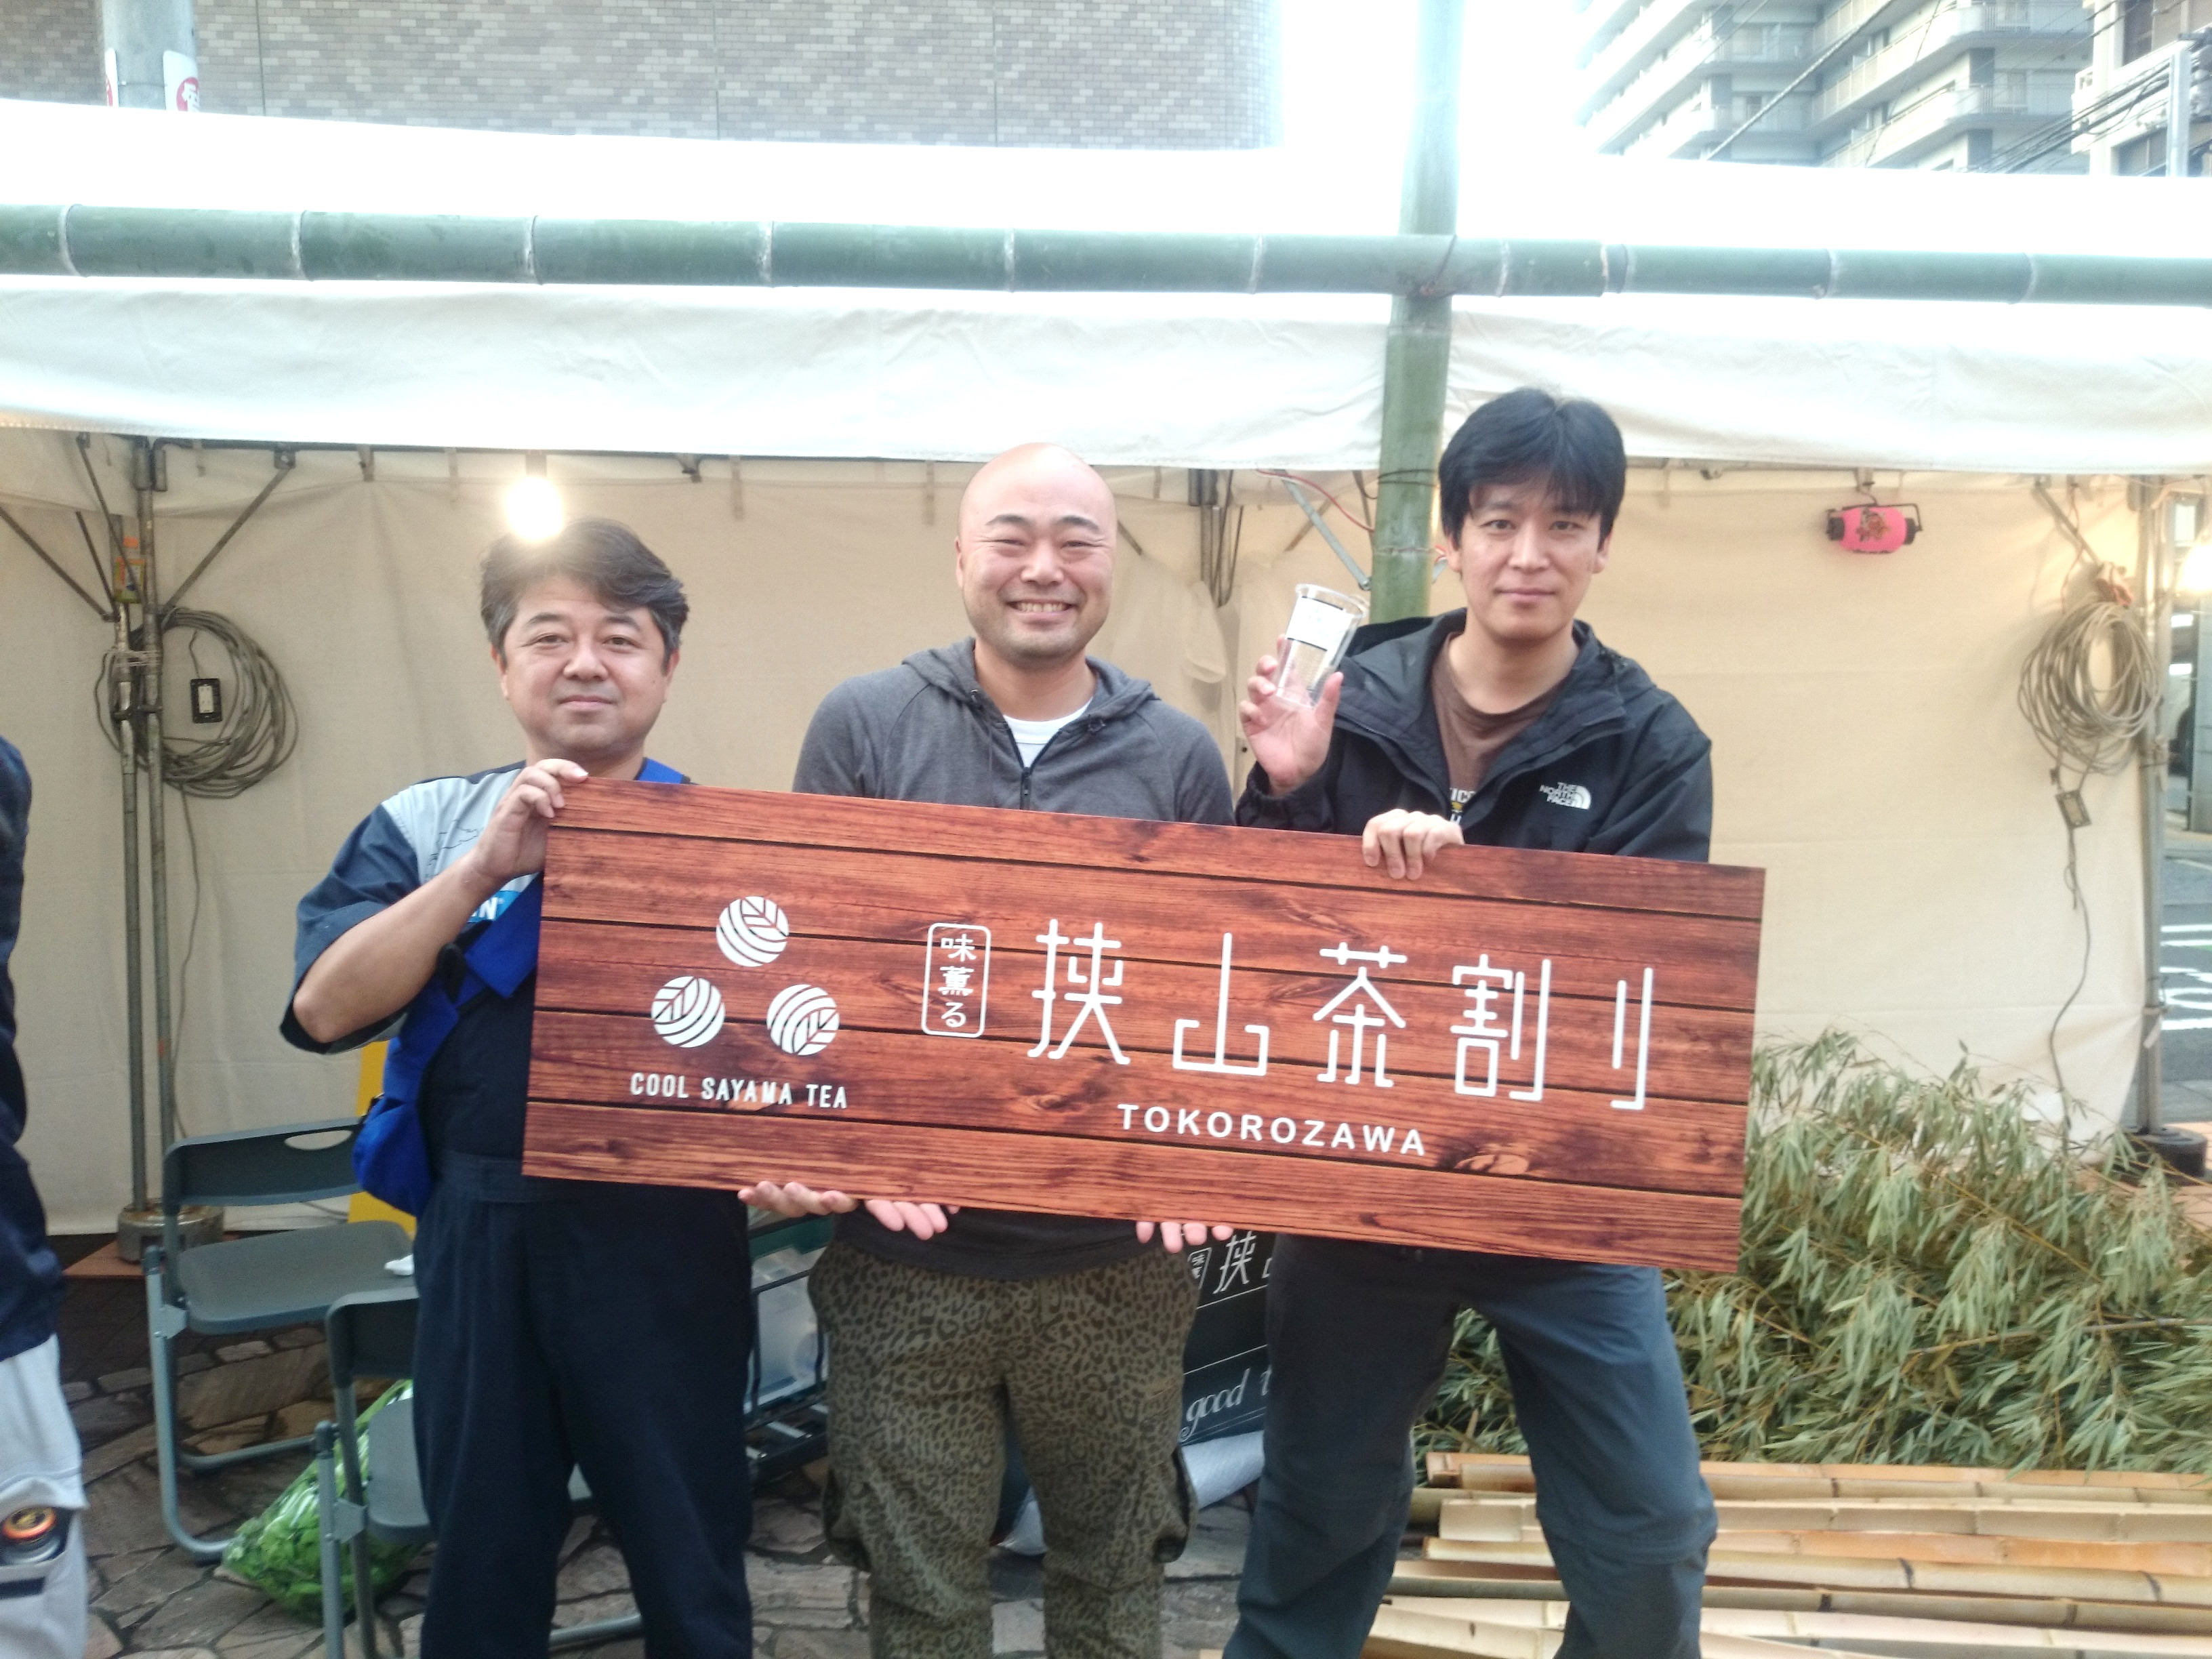 クール狭山茶プロジェクト